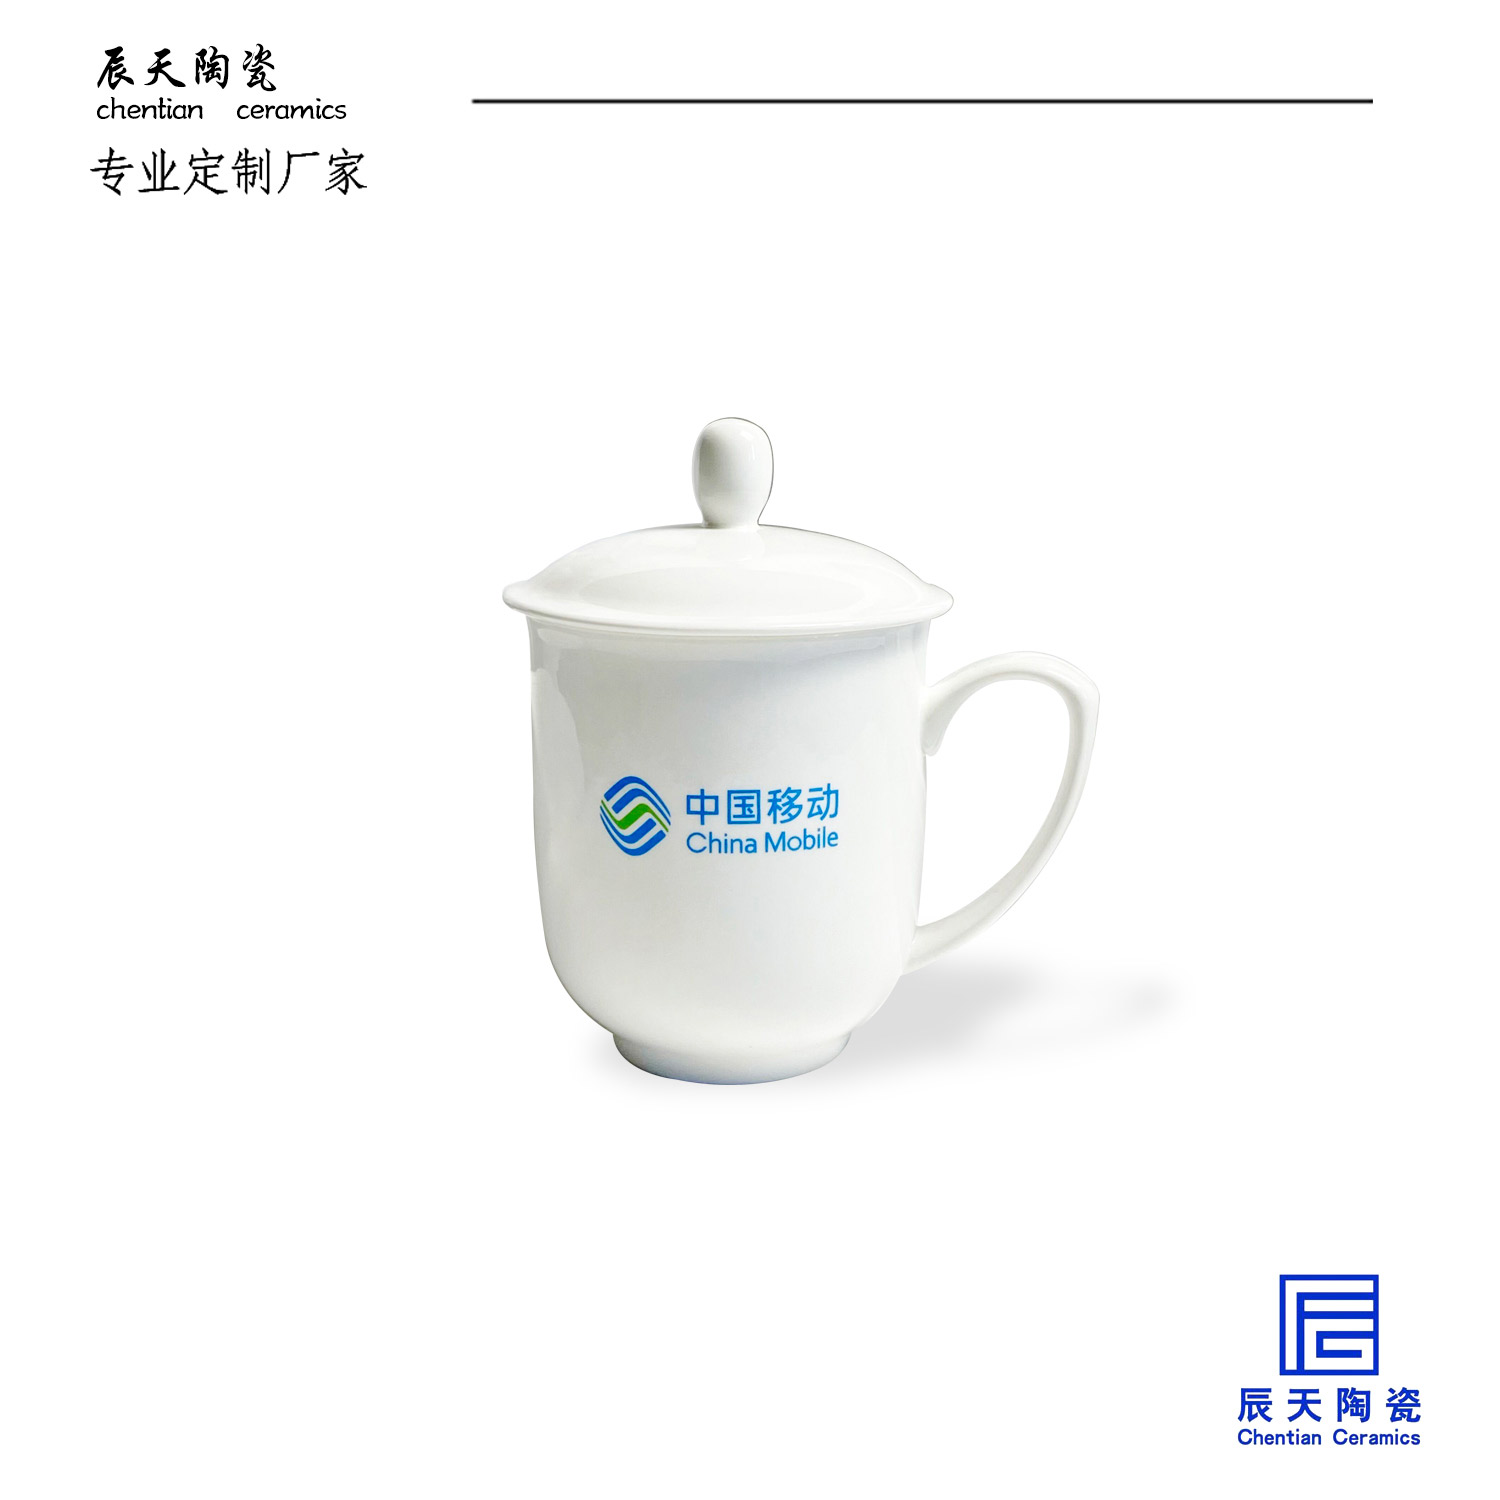 <b>中国移动定制的陶瓷茶杯</b>